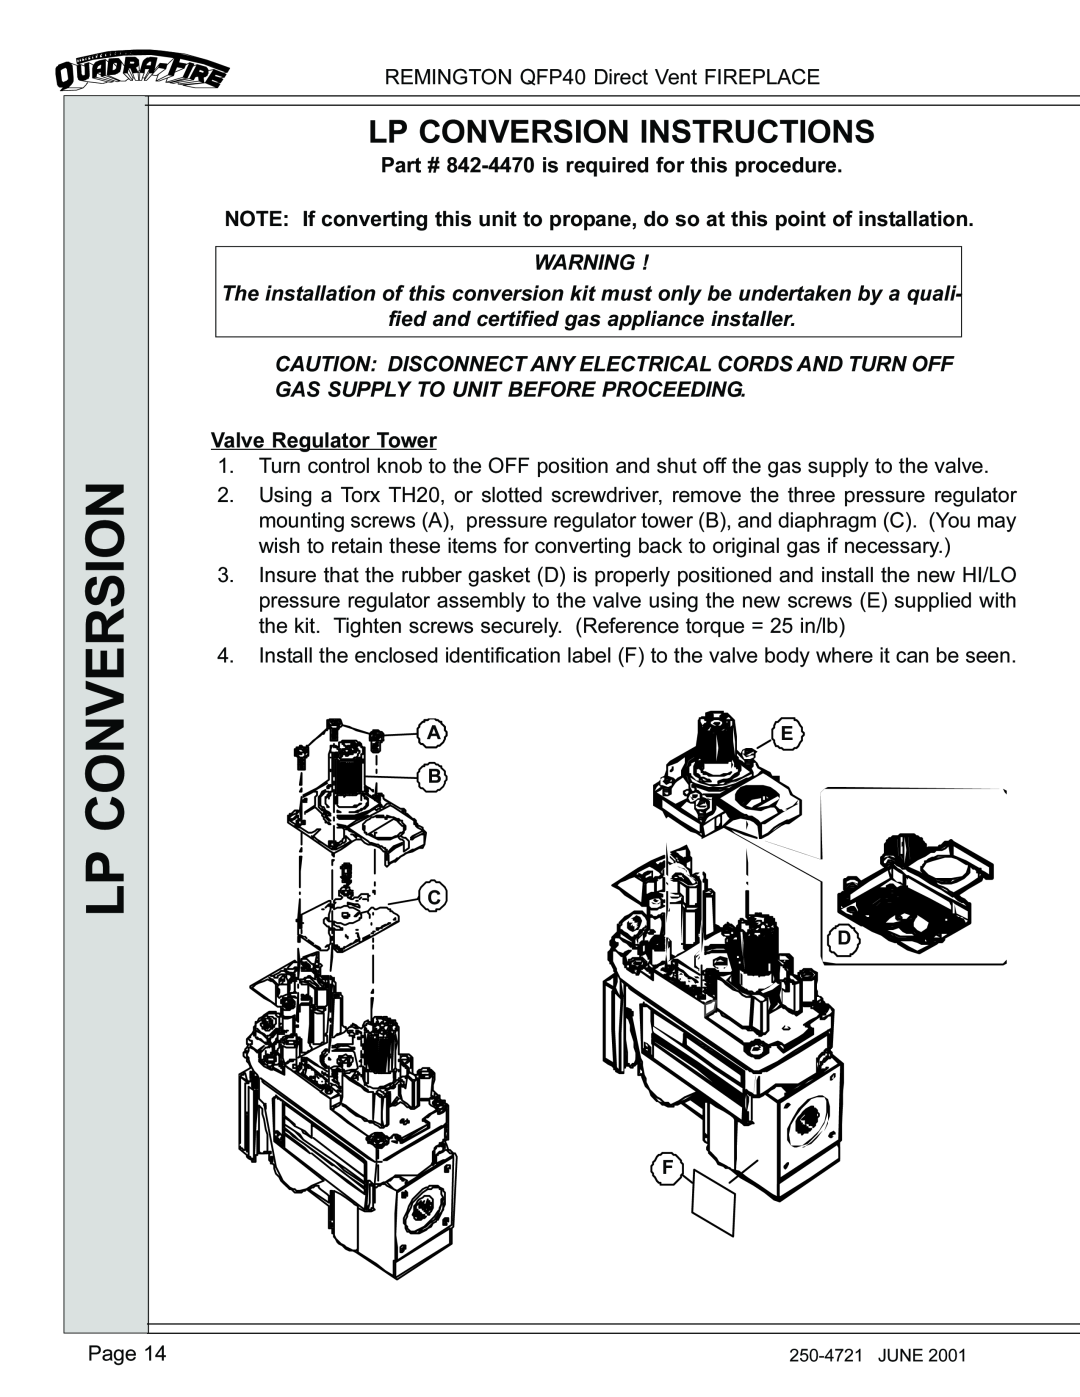 Remington QFP40 manual Lp Conversion Instructions 